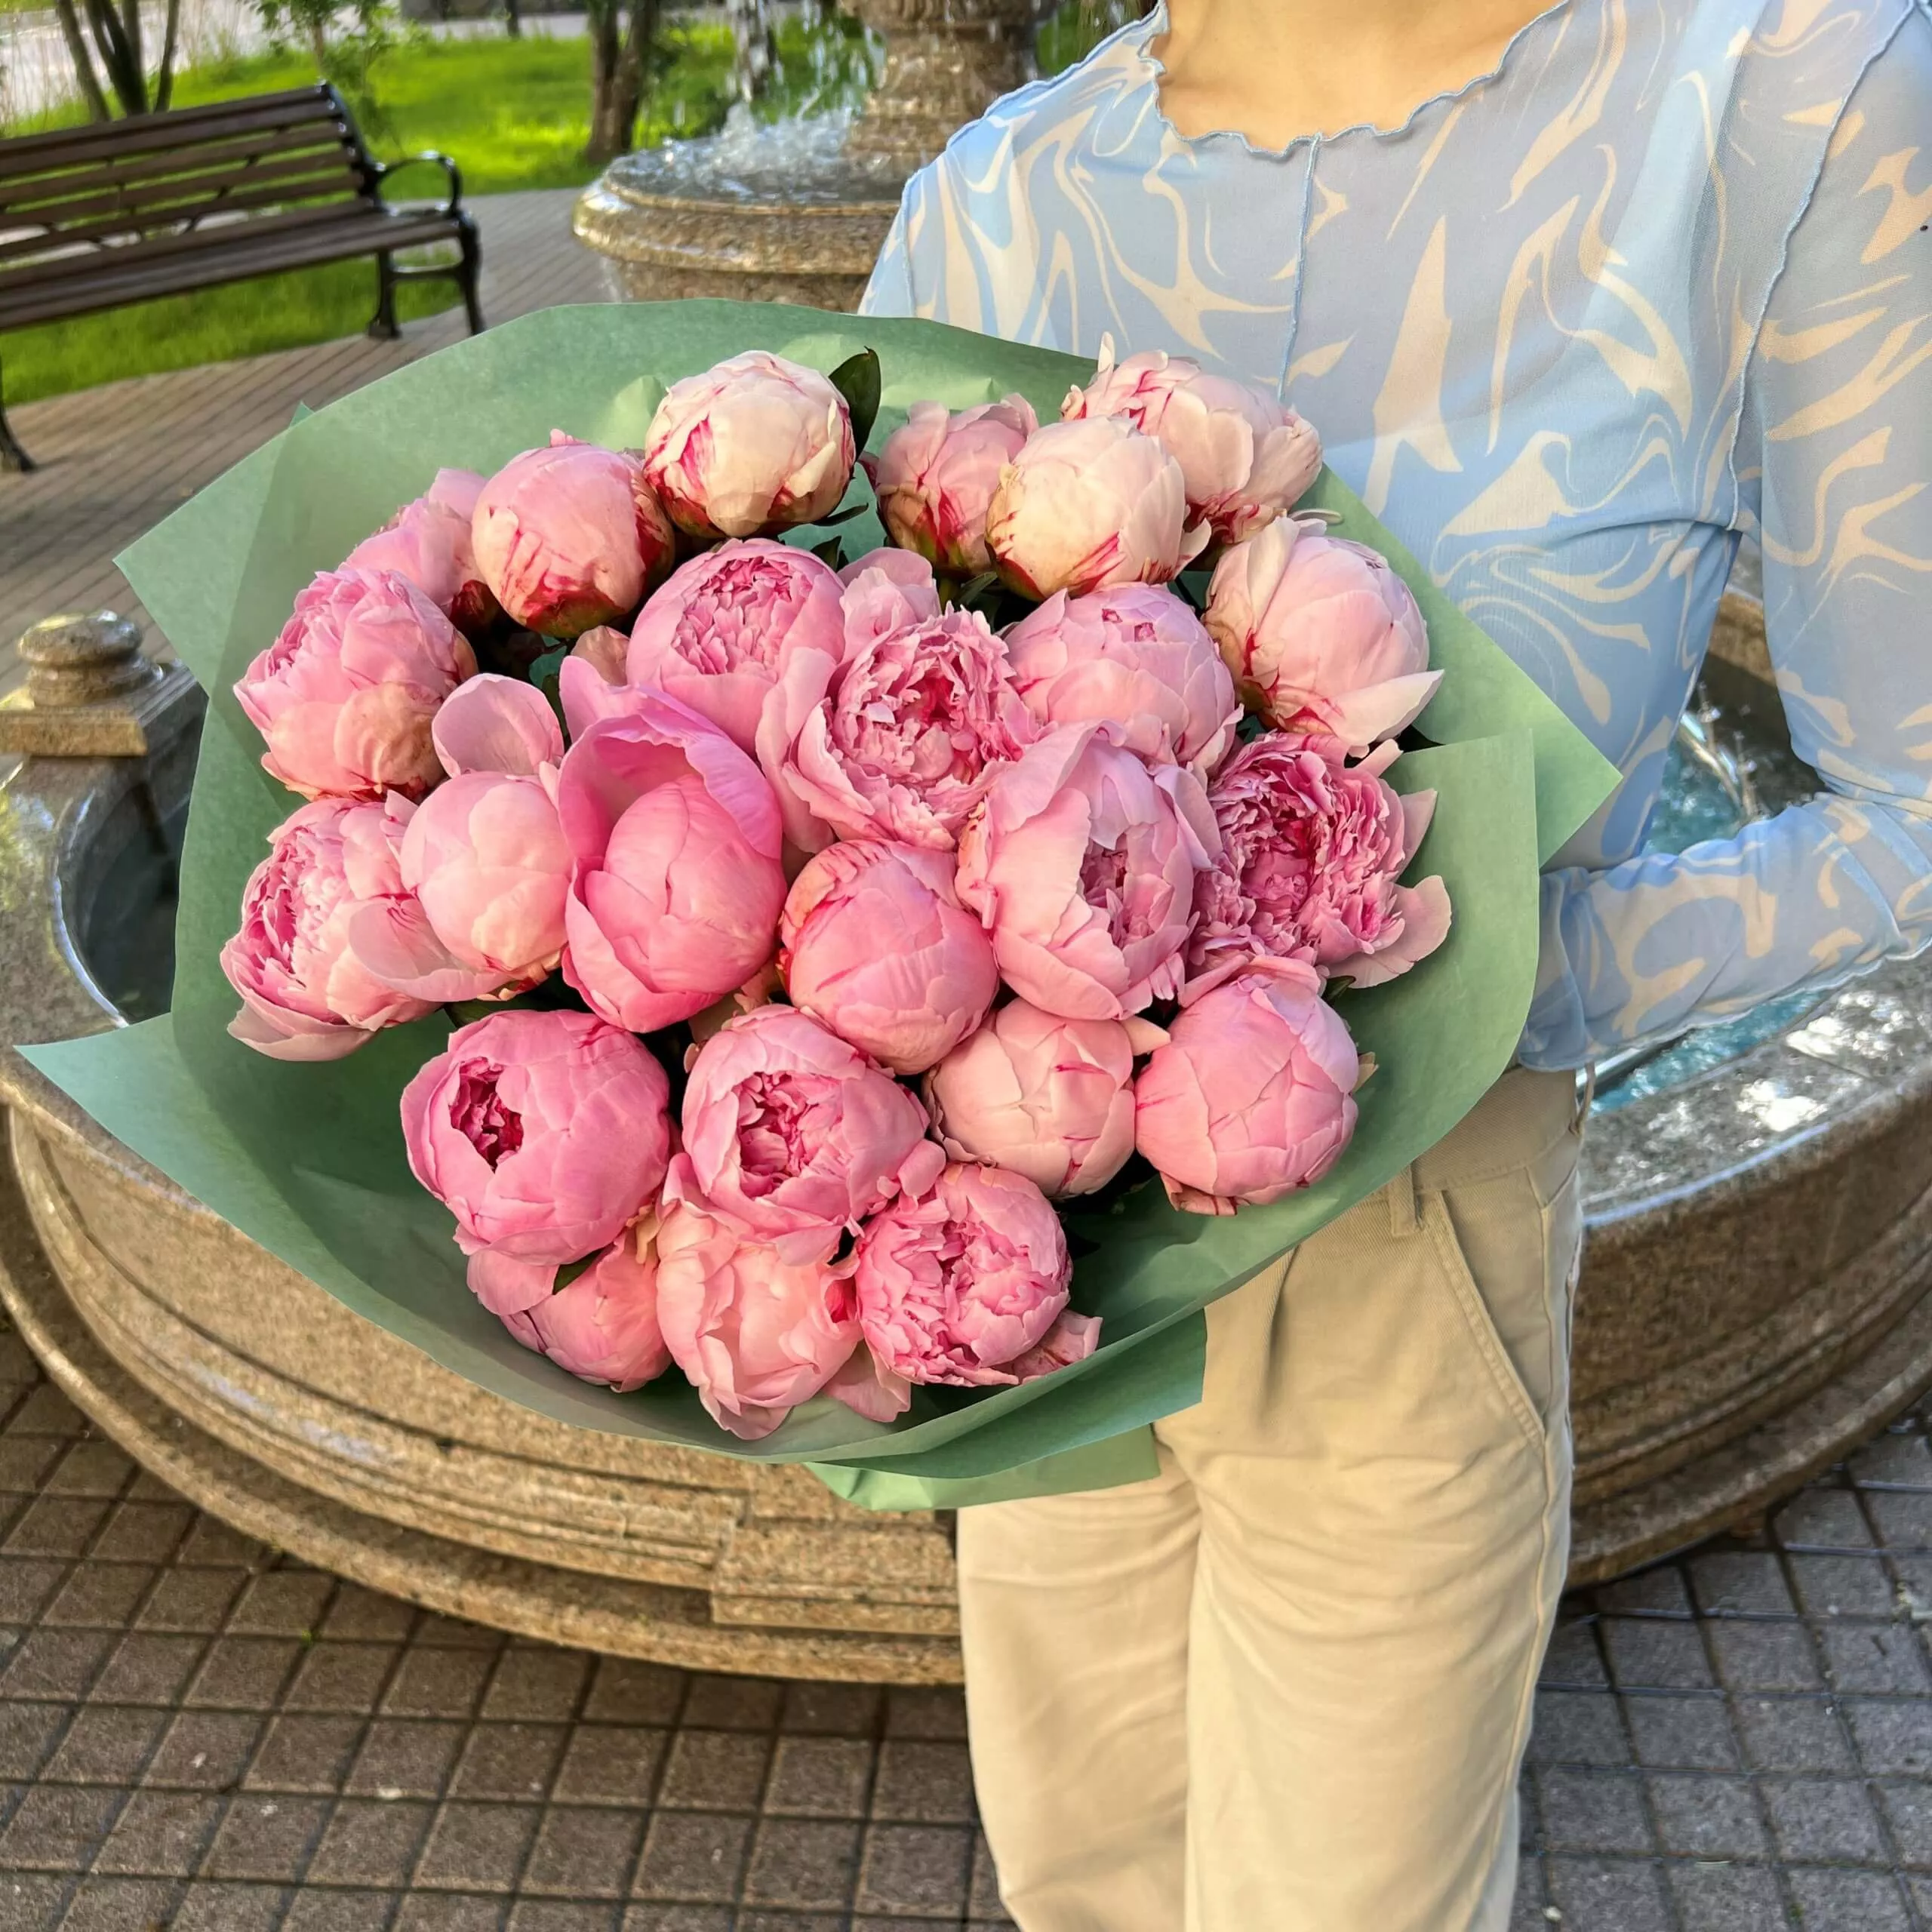 Букет из 25 нежных розовых пионов в зеленом оформлении